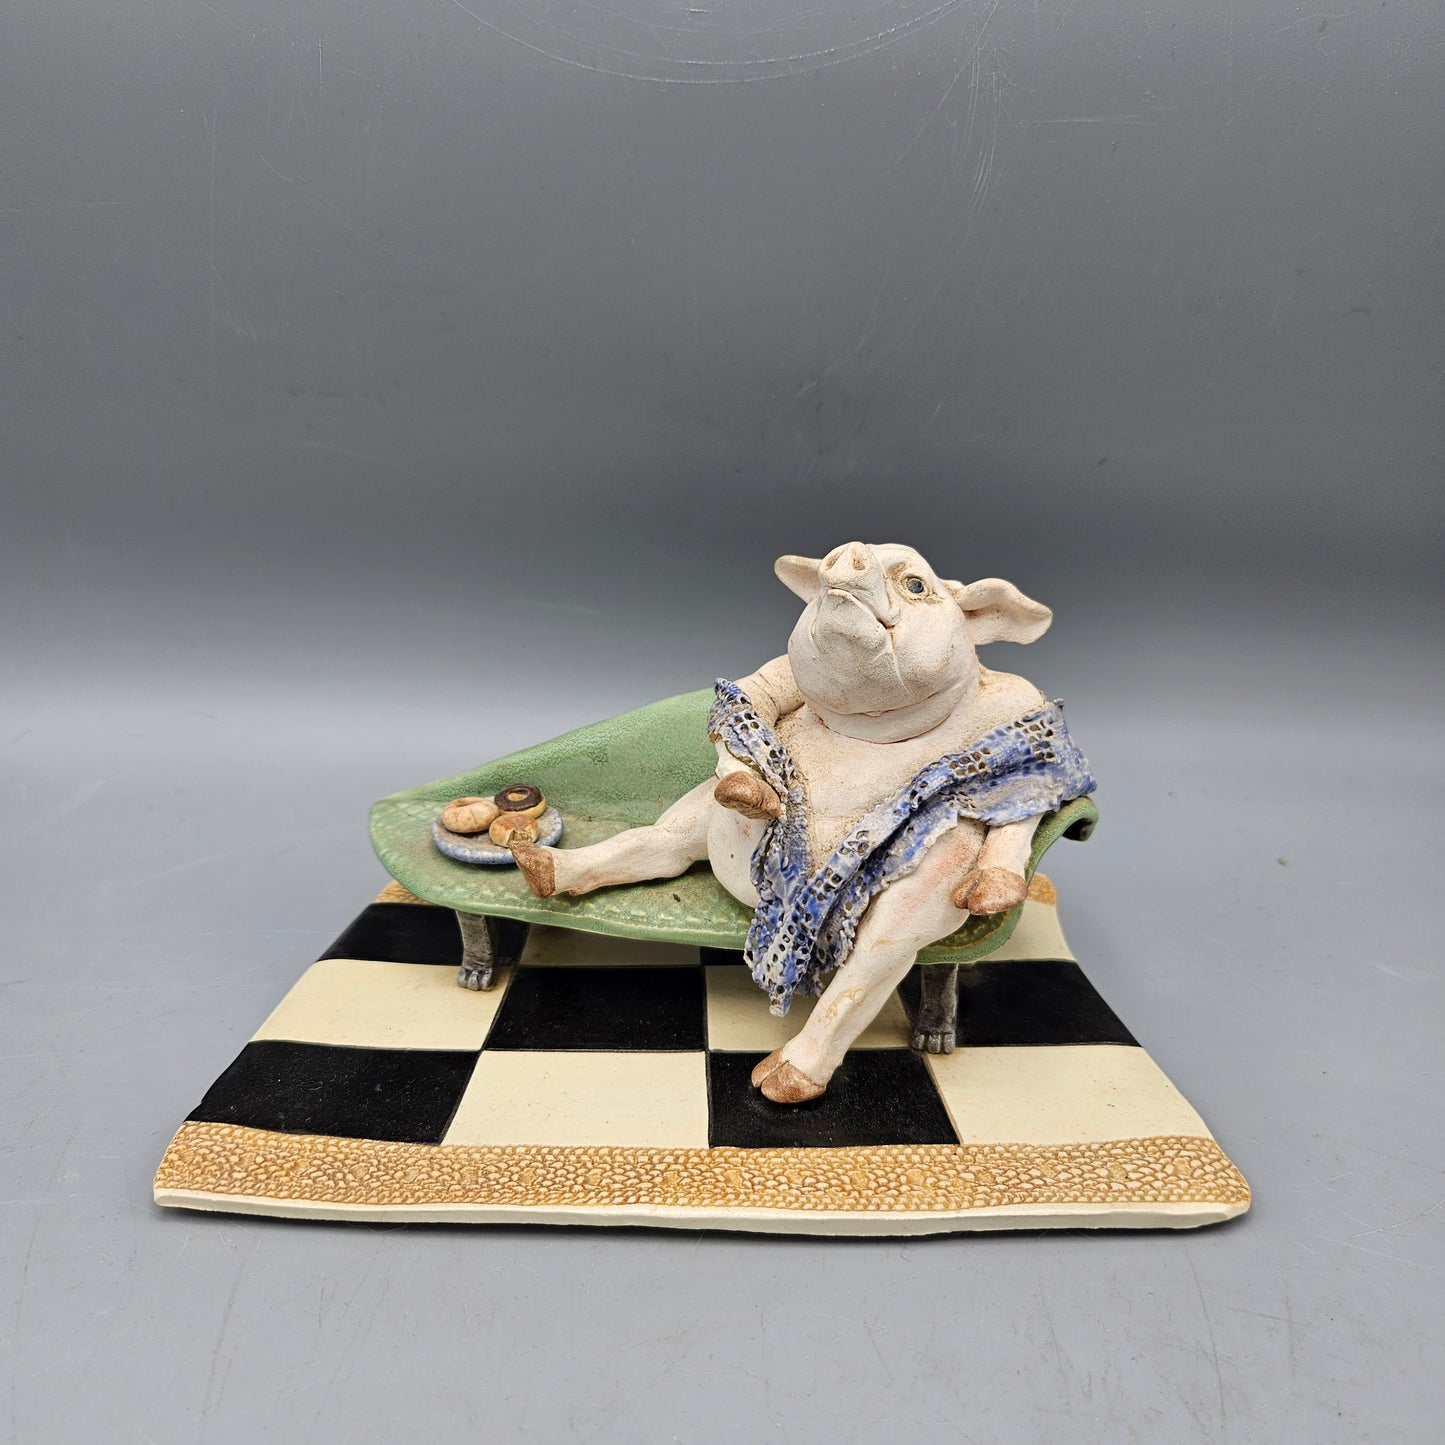 Studio Pottery Ceramic Pig on Sofa Sculpture